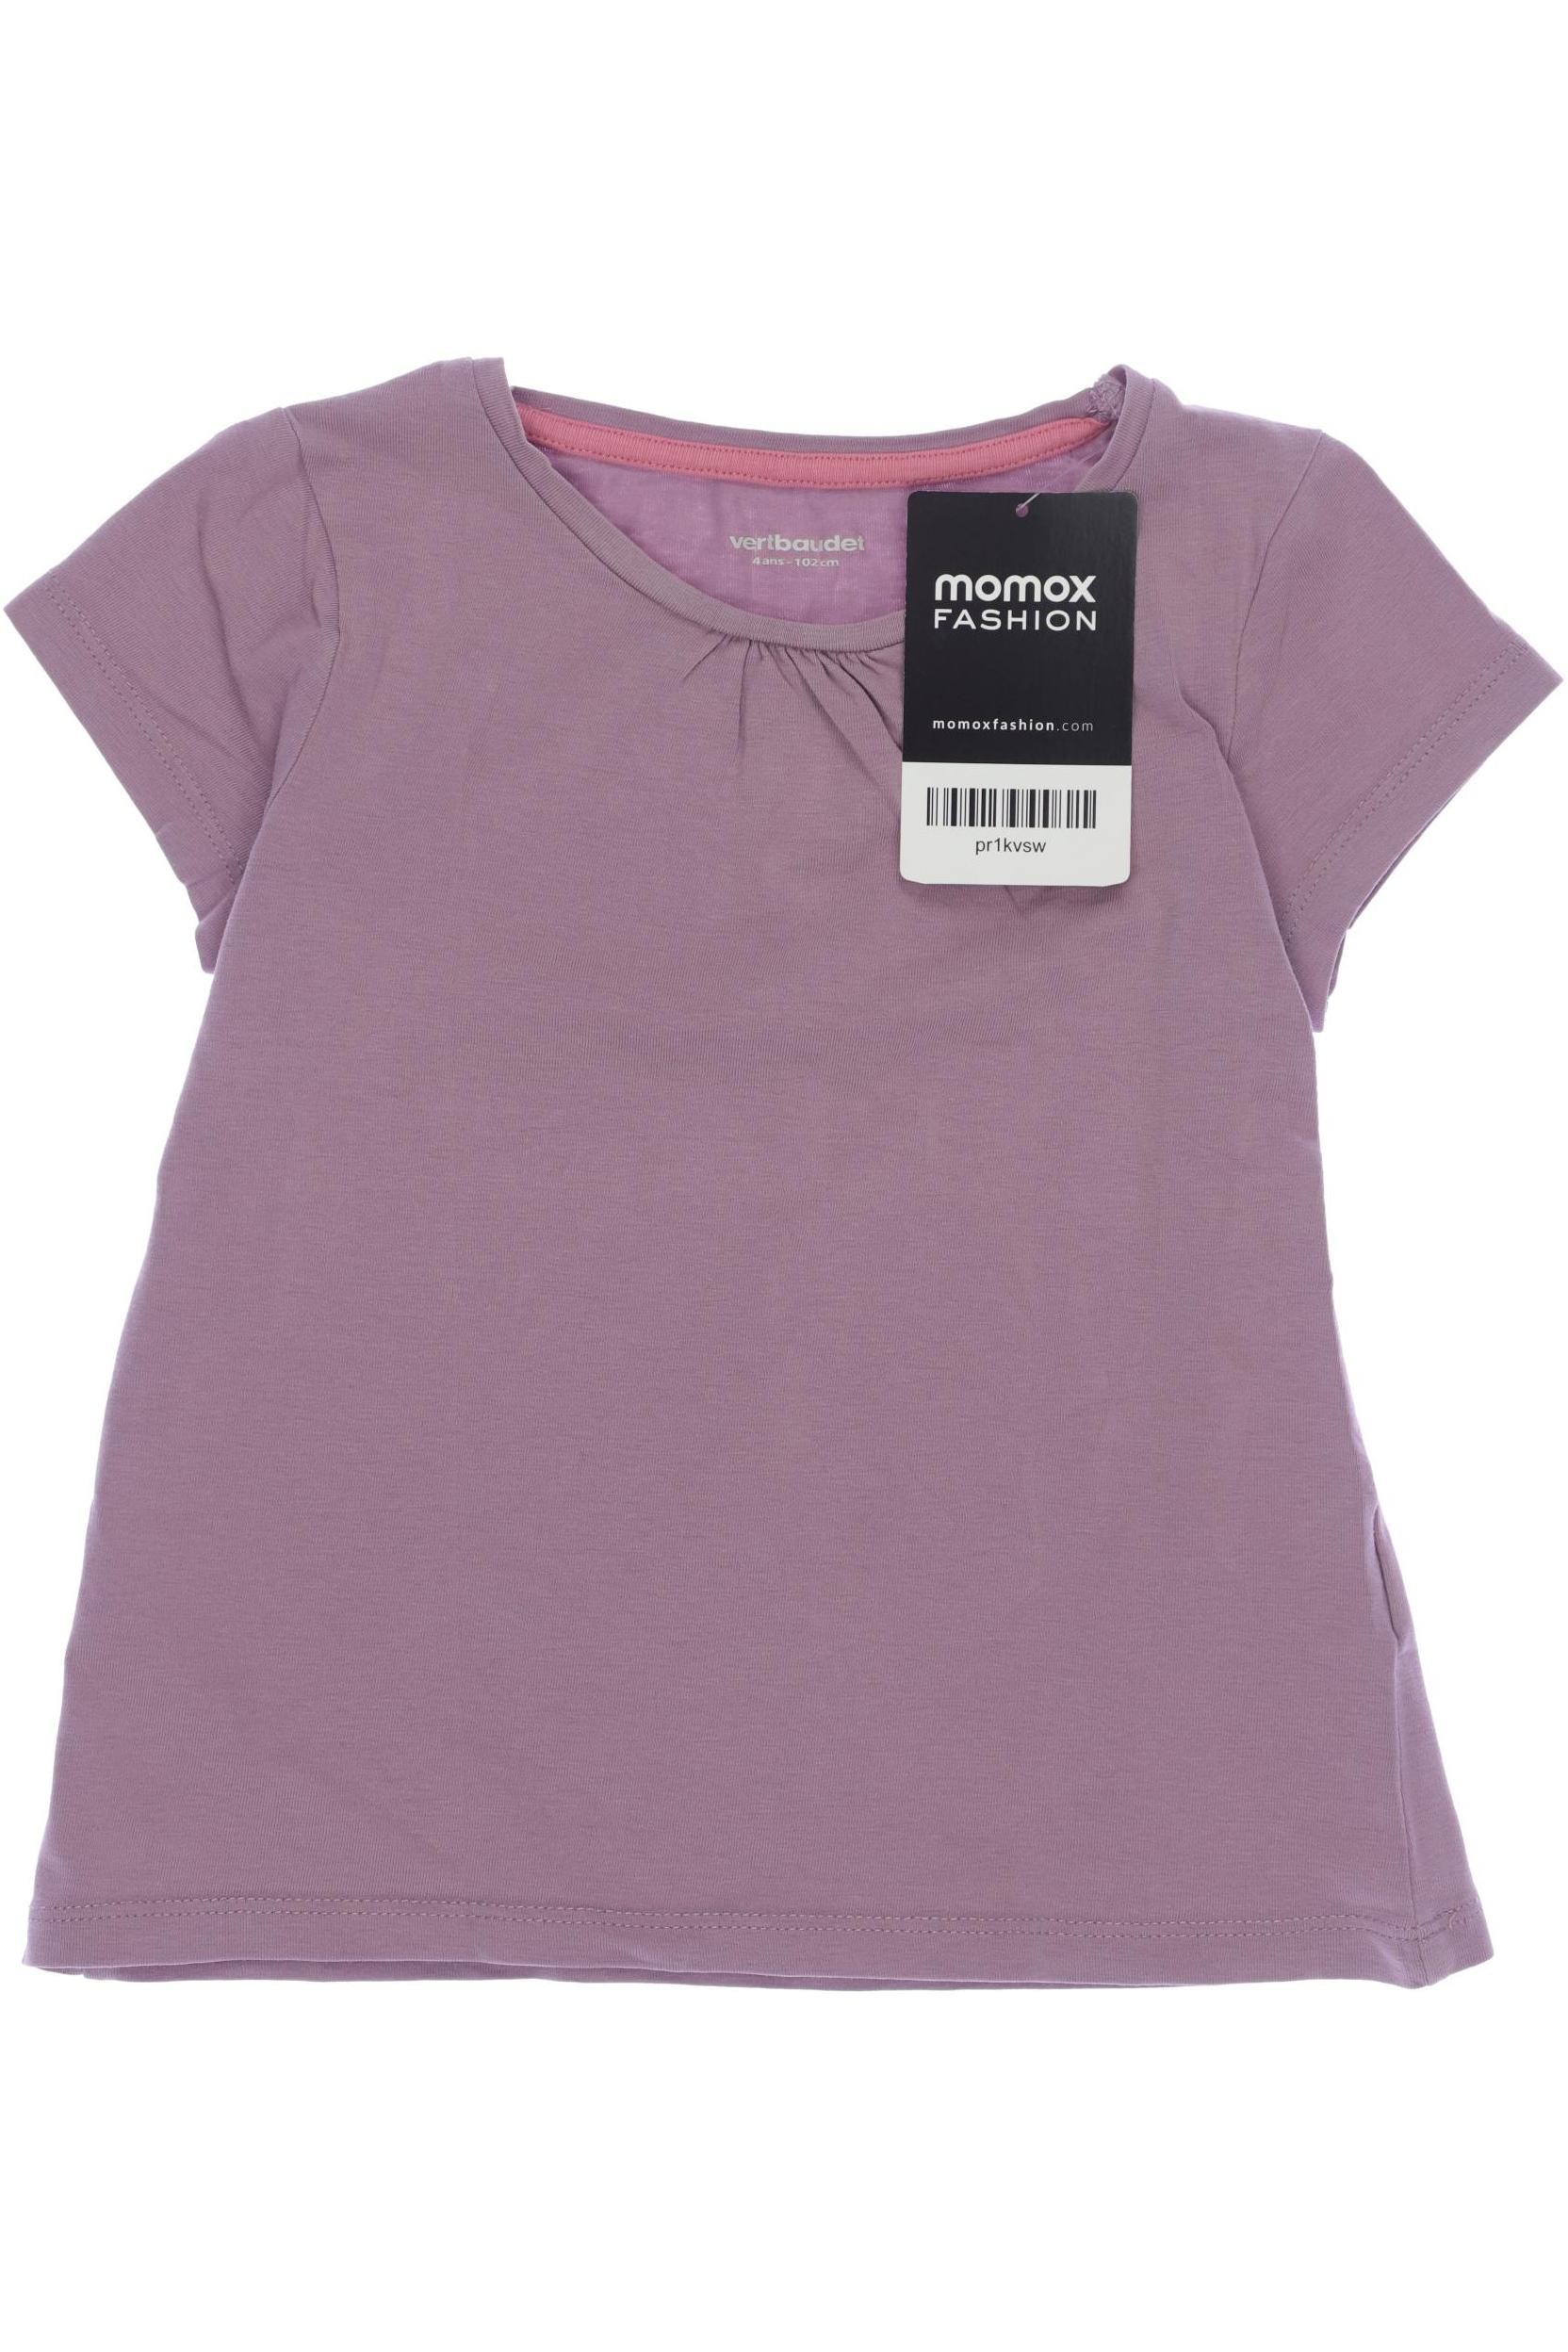 vertbaudet Damen T-Shirt, pink, Gr. 104 von vertbaudet